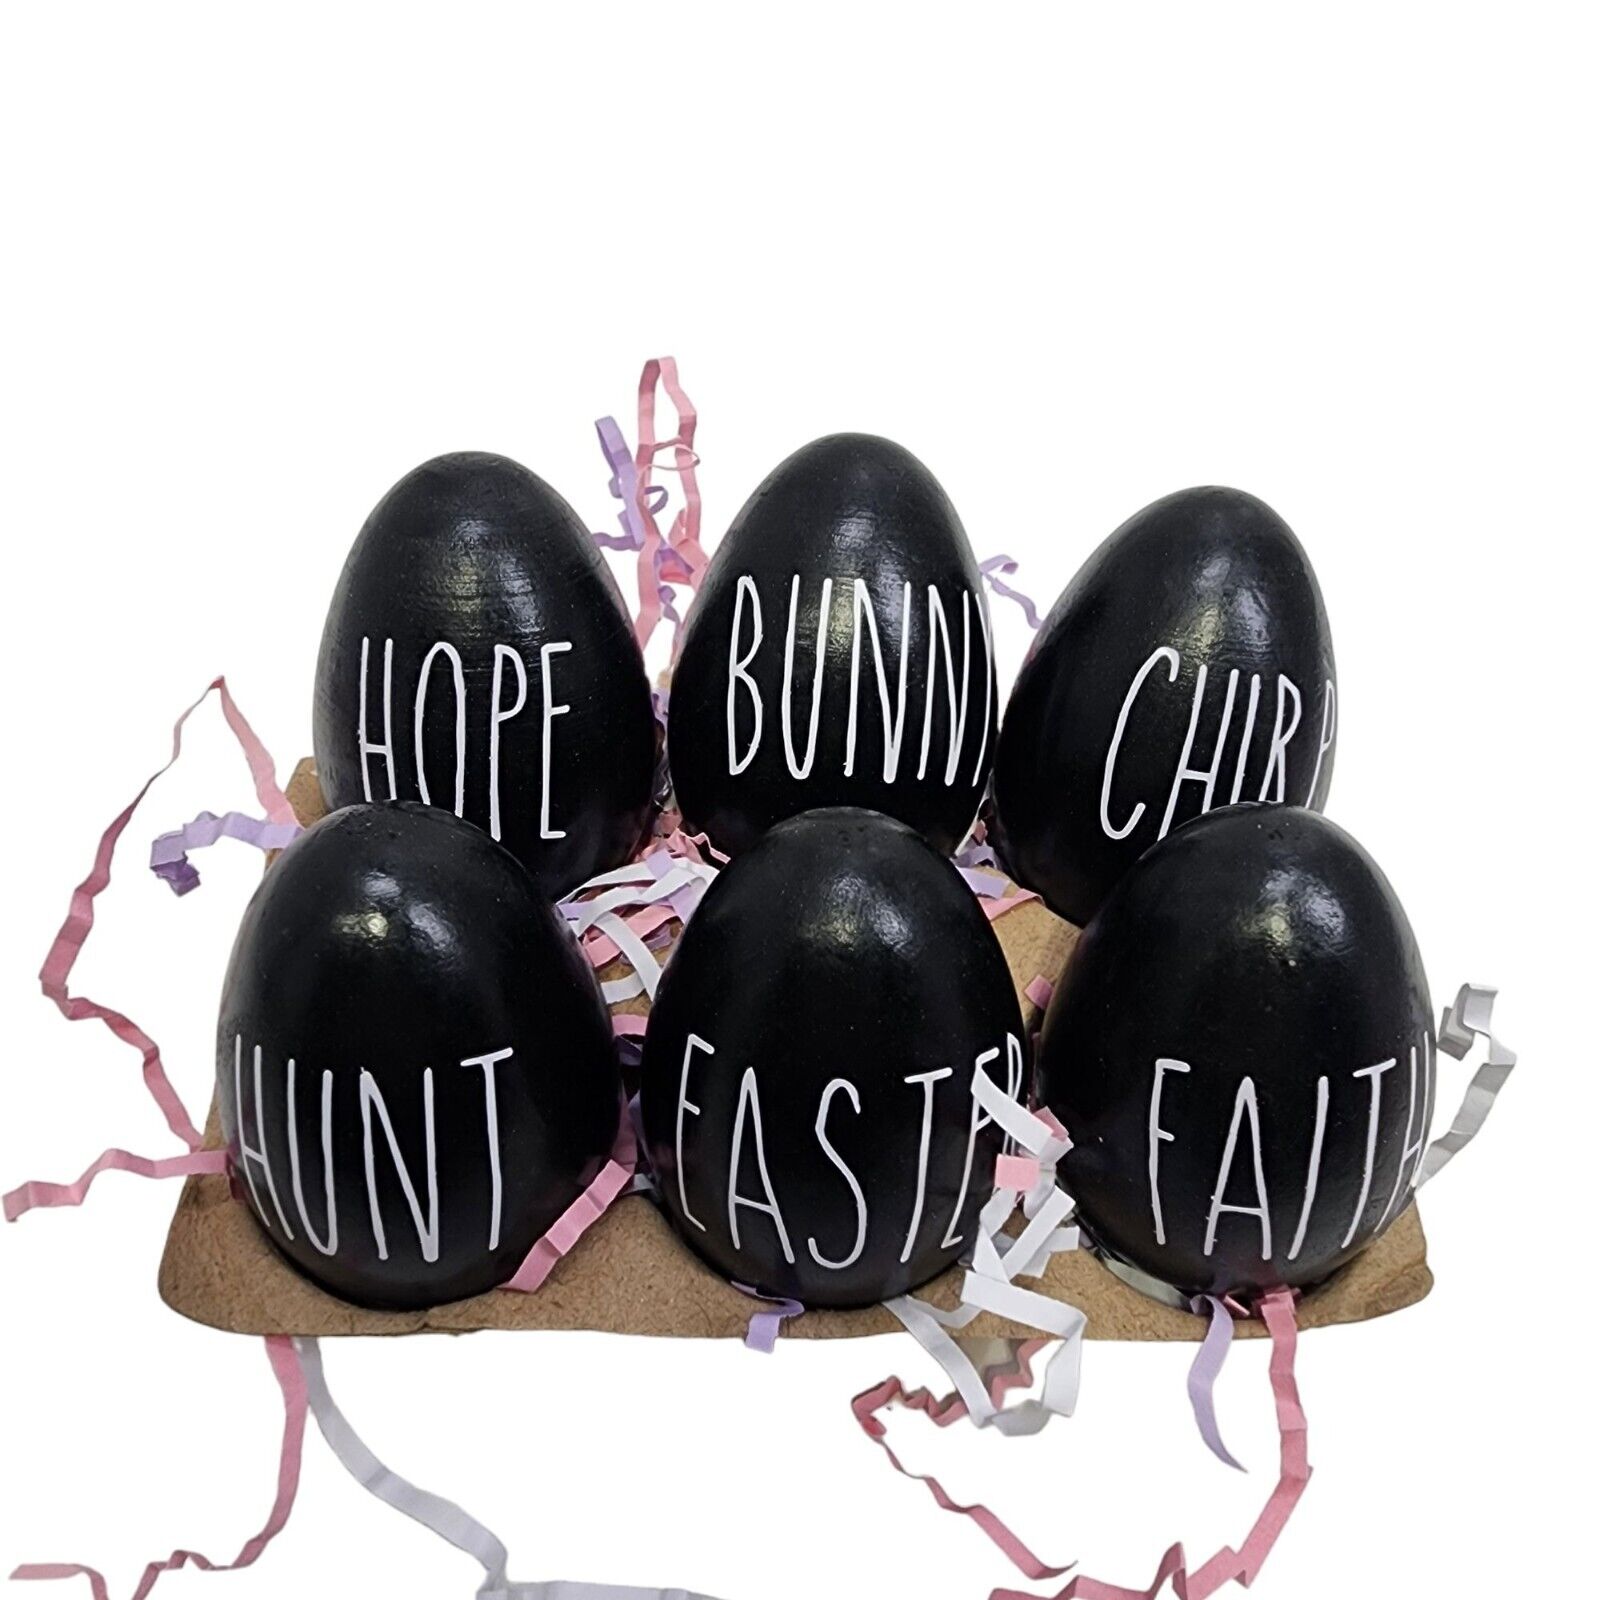 6 Wooden Easter Eggs Vinyl Lettering Black Hunt Easter Faith Hop Bunny Chirp